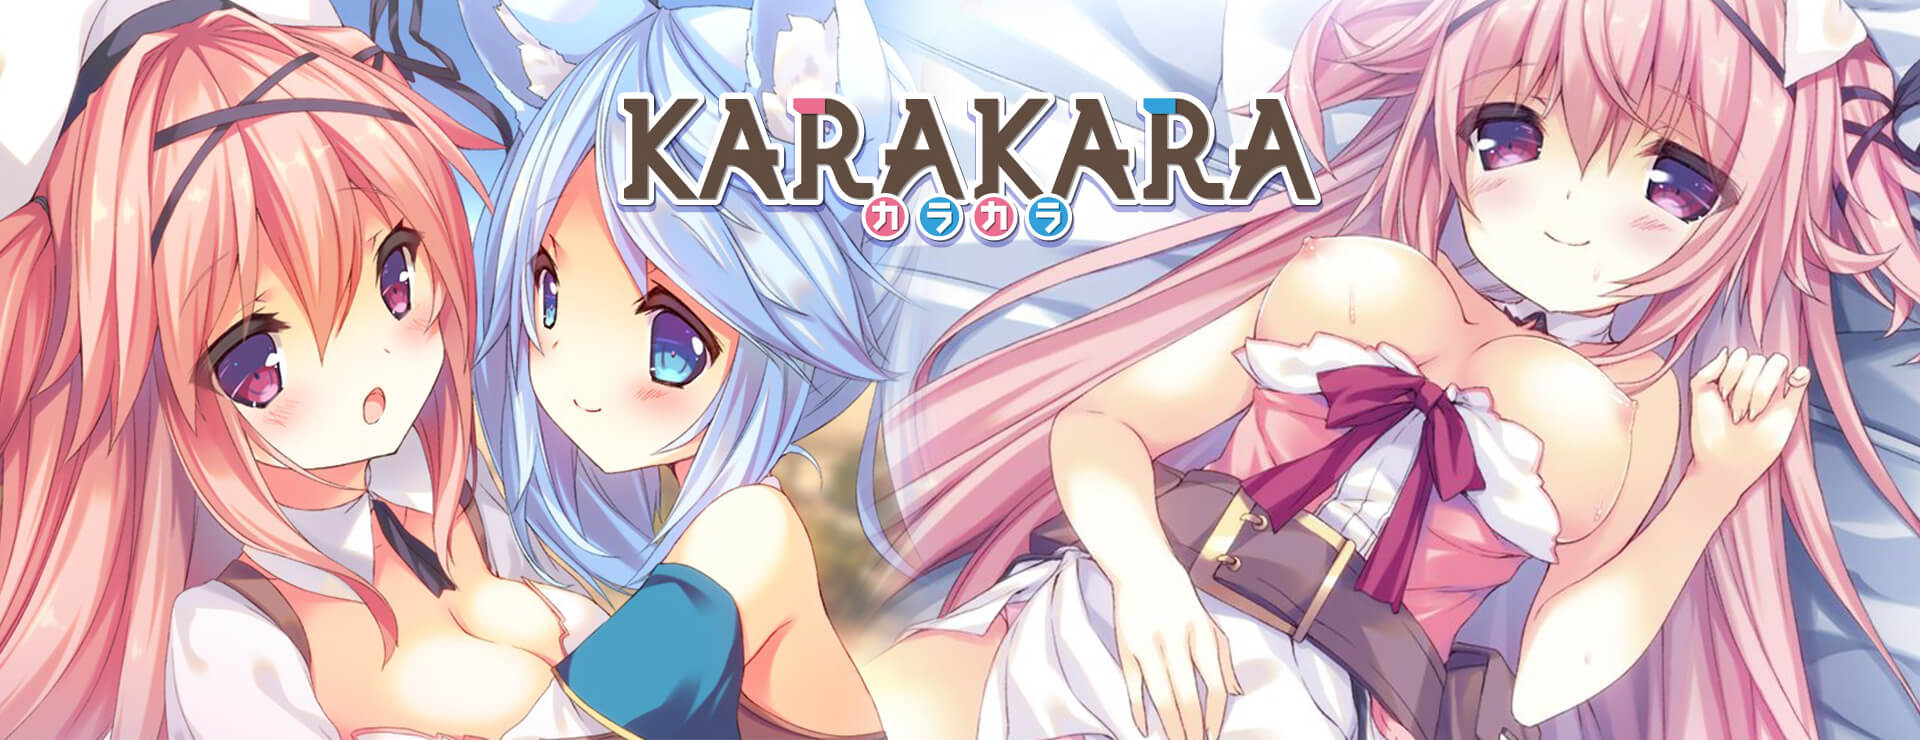 KARAKARA - ビジュアルノベル ゲーム